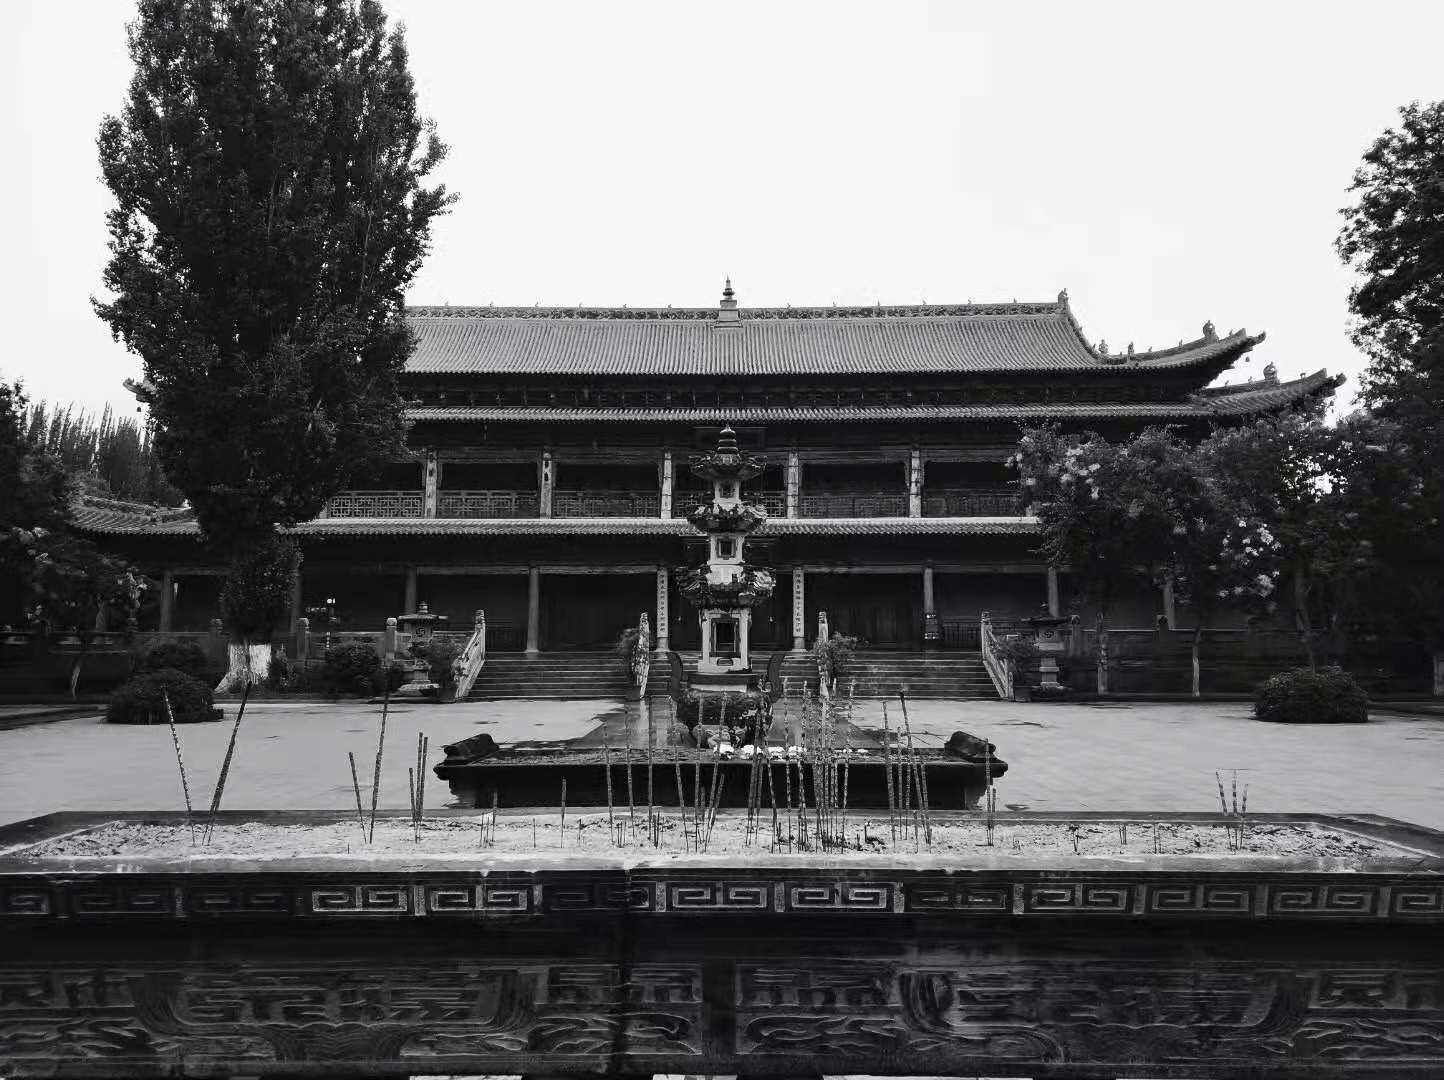 张掖大佛寺，西夏皇家寺院，南宋末帝曾经在这座寺院修行。